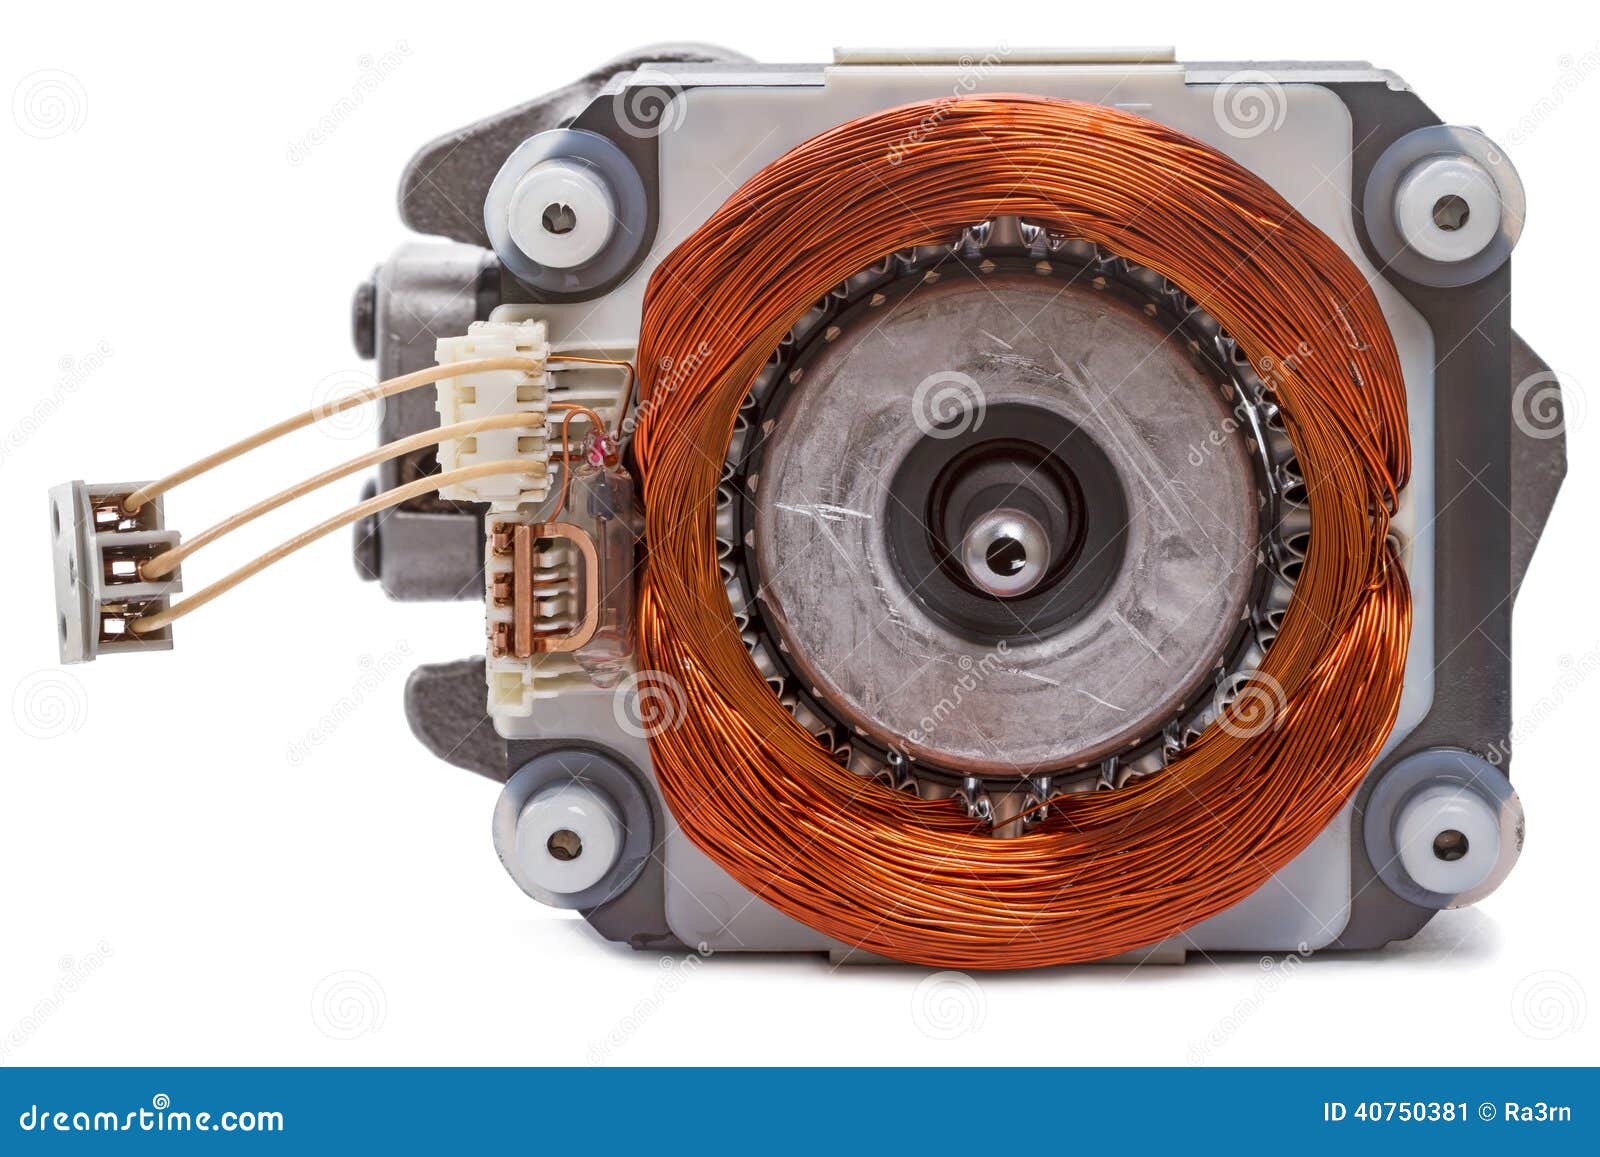 Motore elettrico monofase immagine stock. Immagine di industria - 40750381